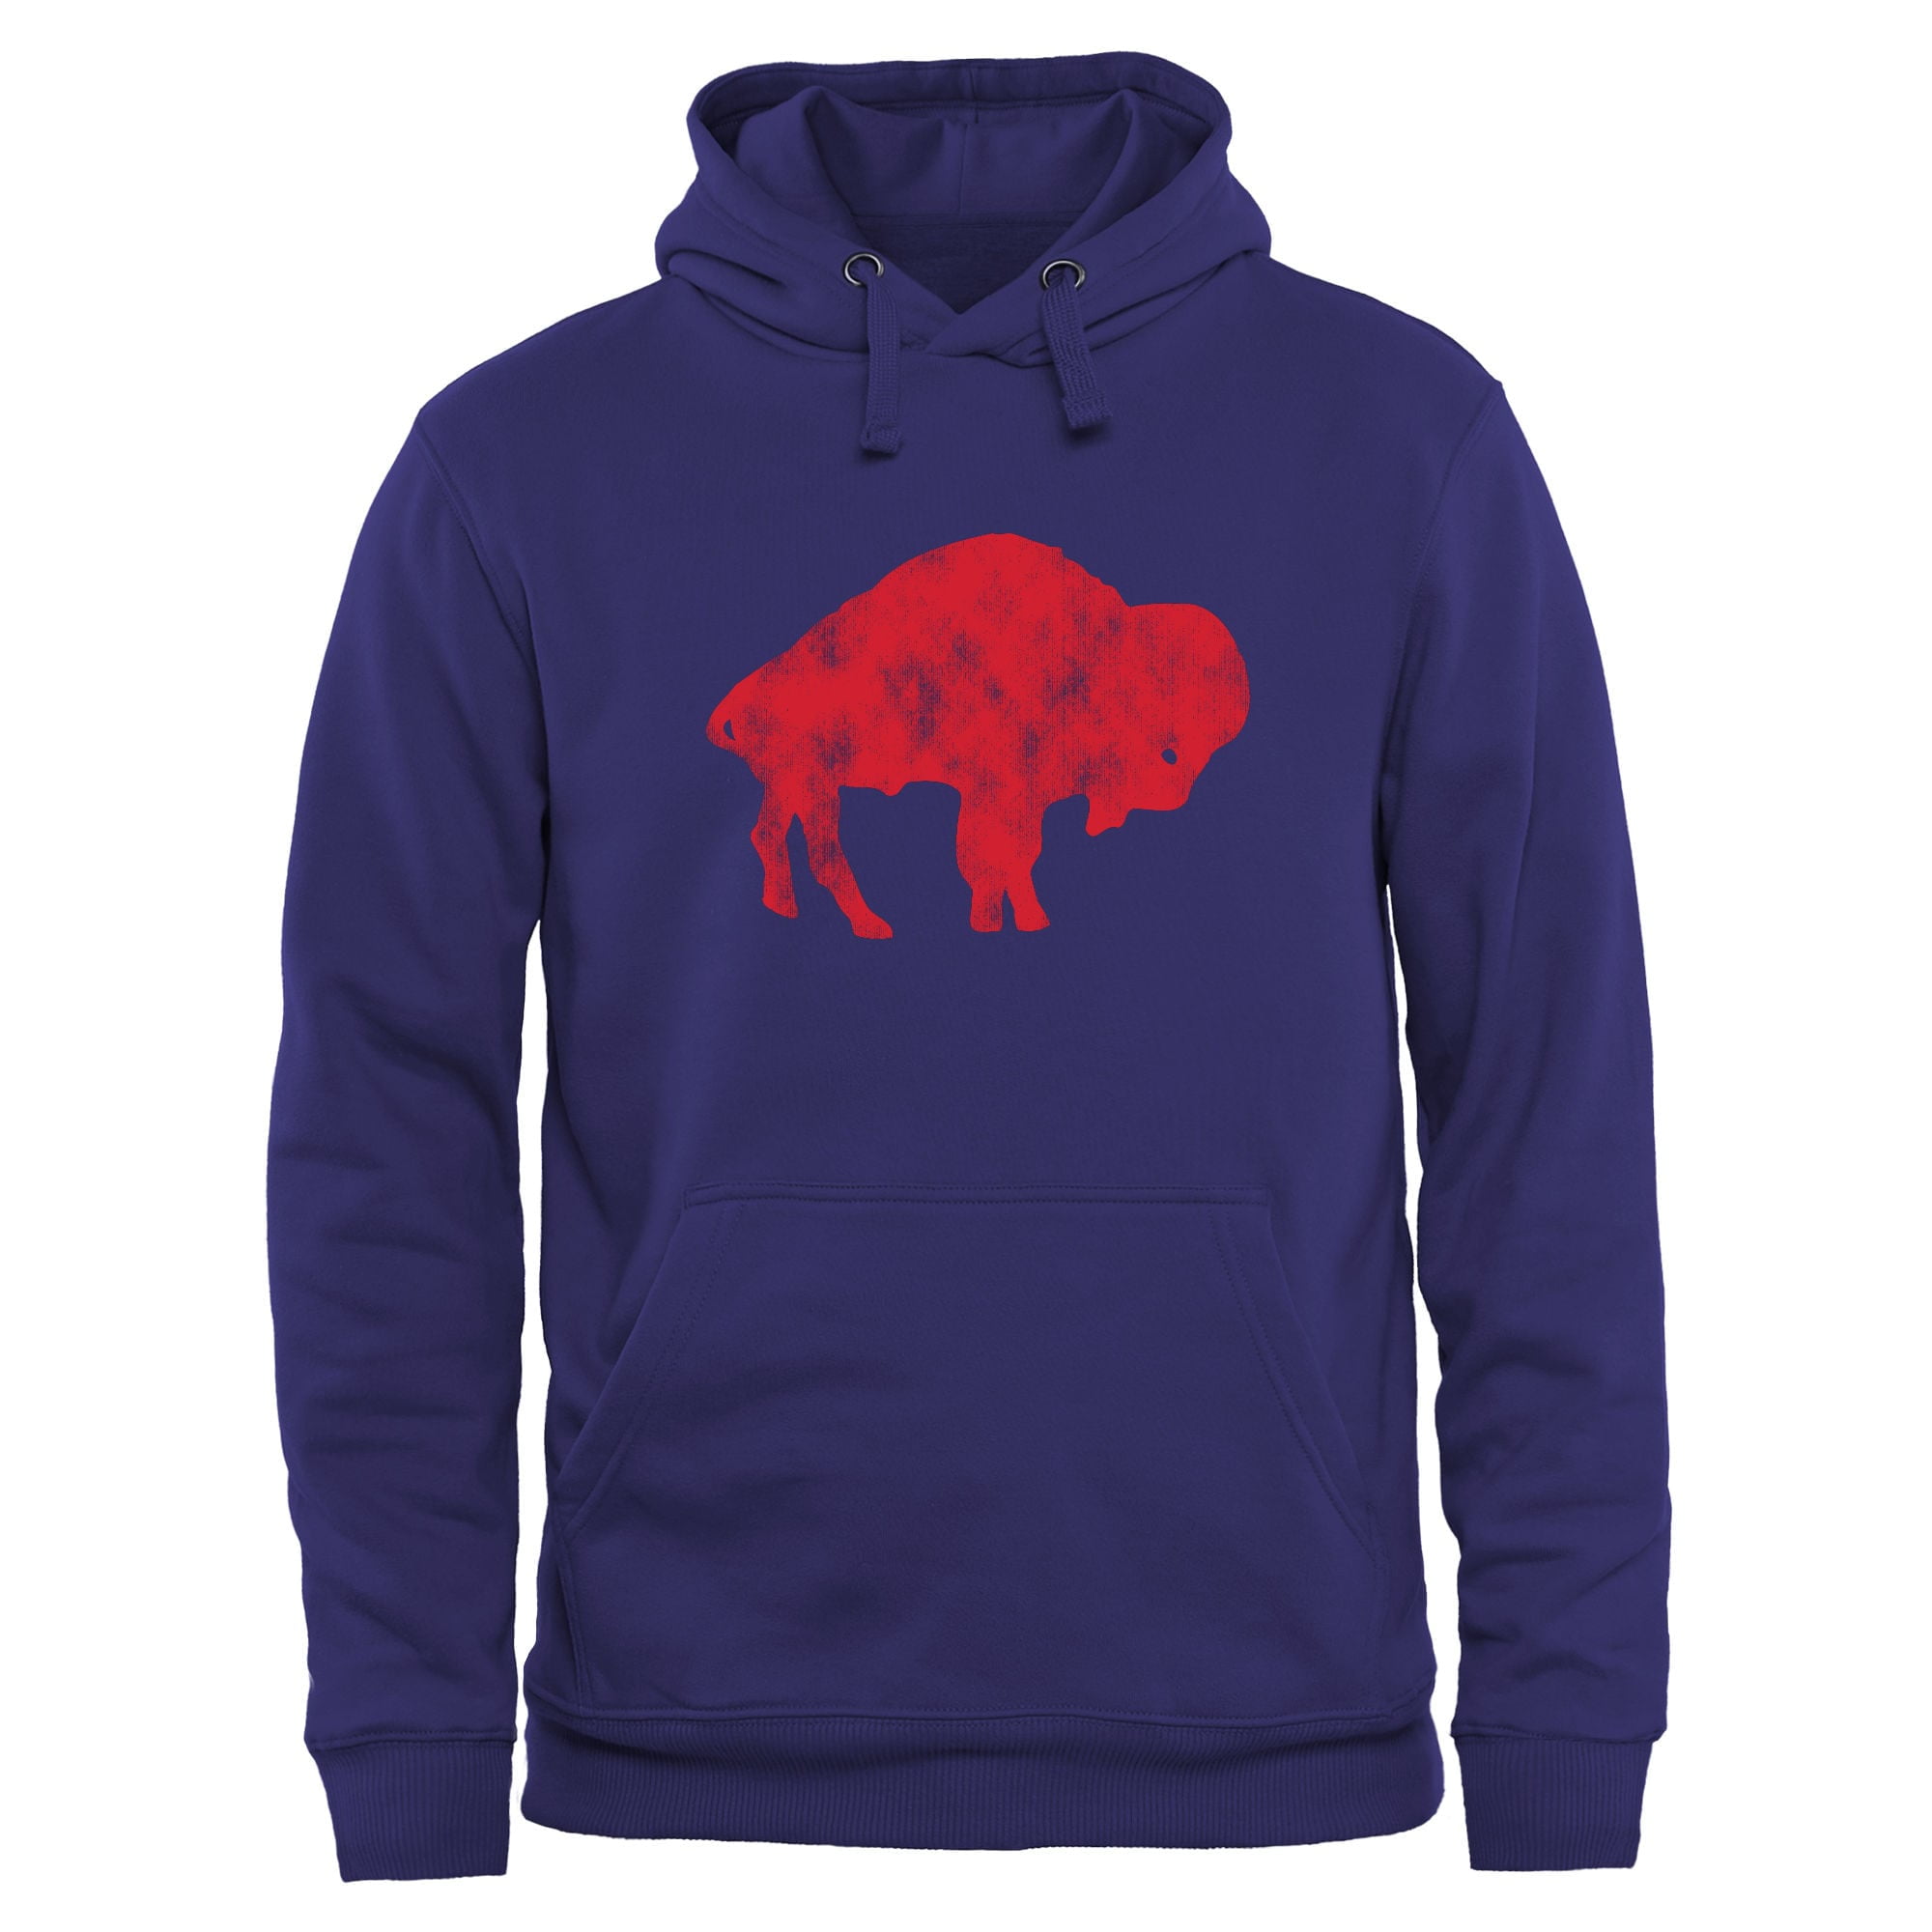 buffalo bills hoodie walmart